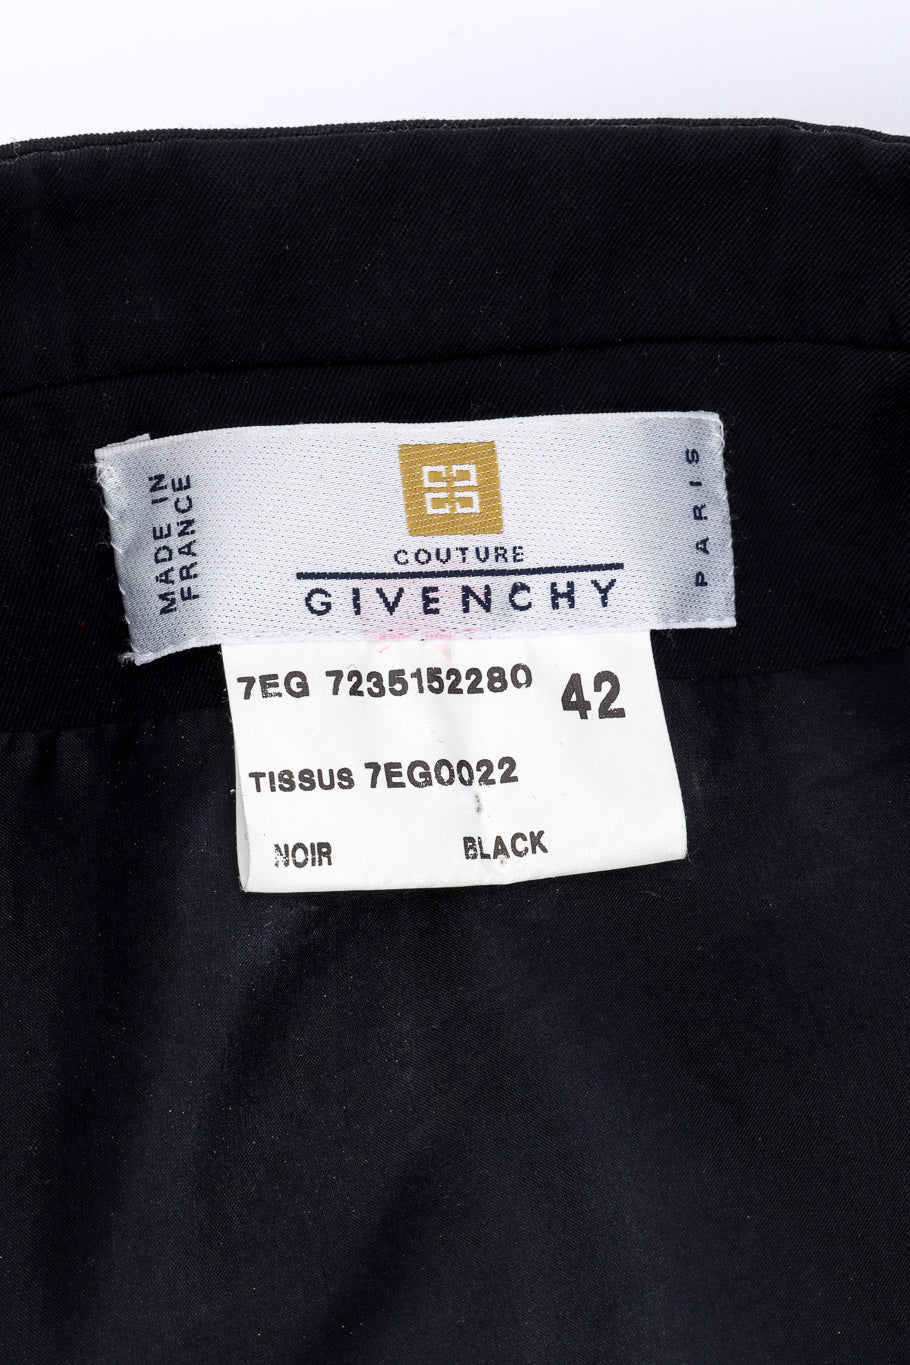 Vintage Givenchy Couture Soutache Matador Jacket signature label @recessla